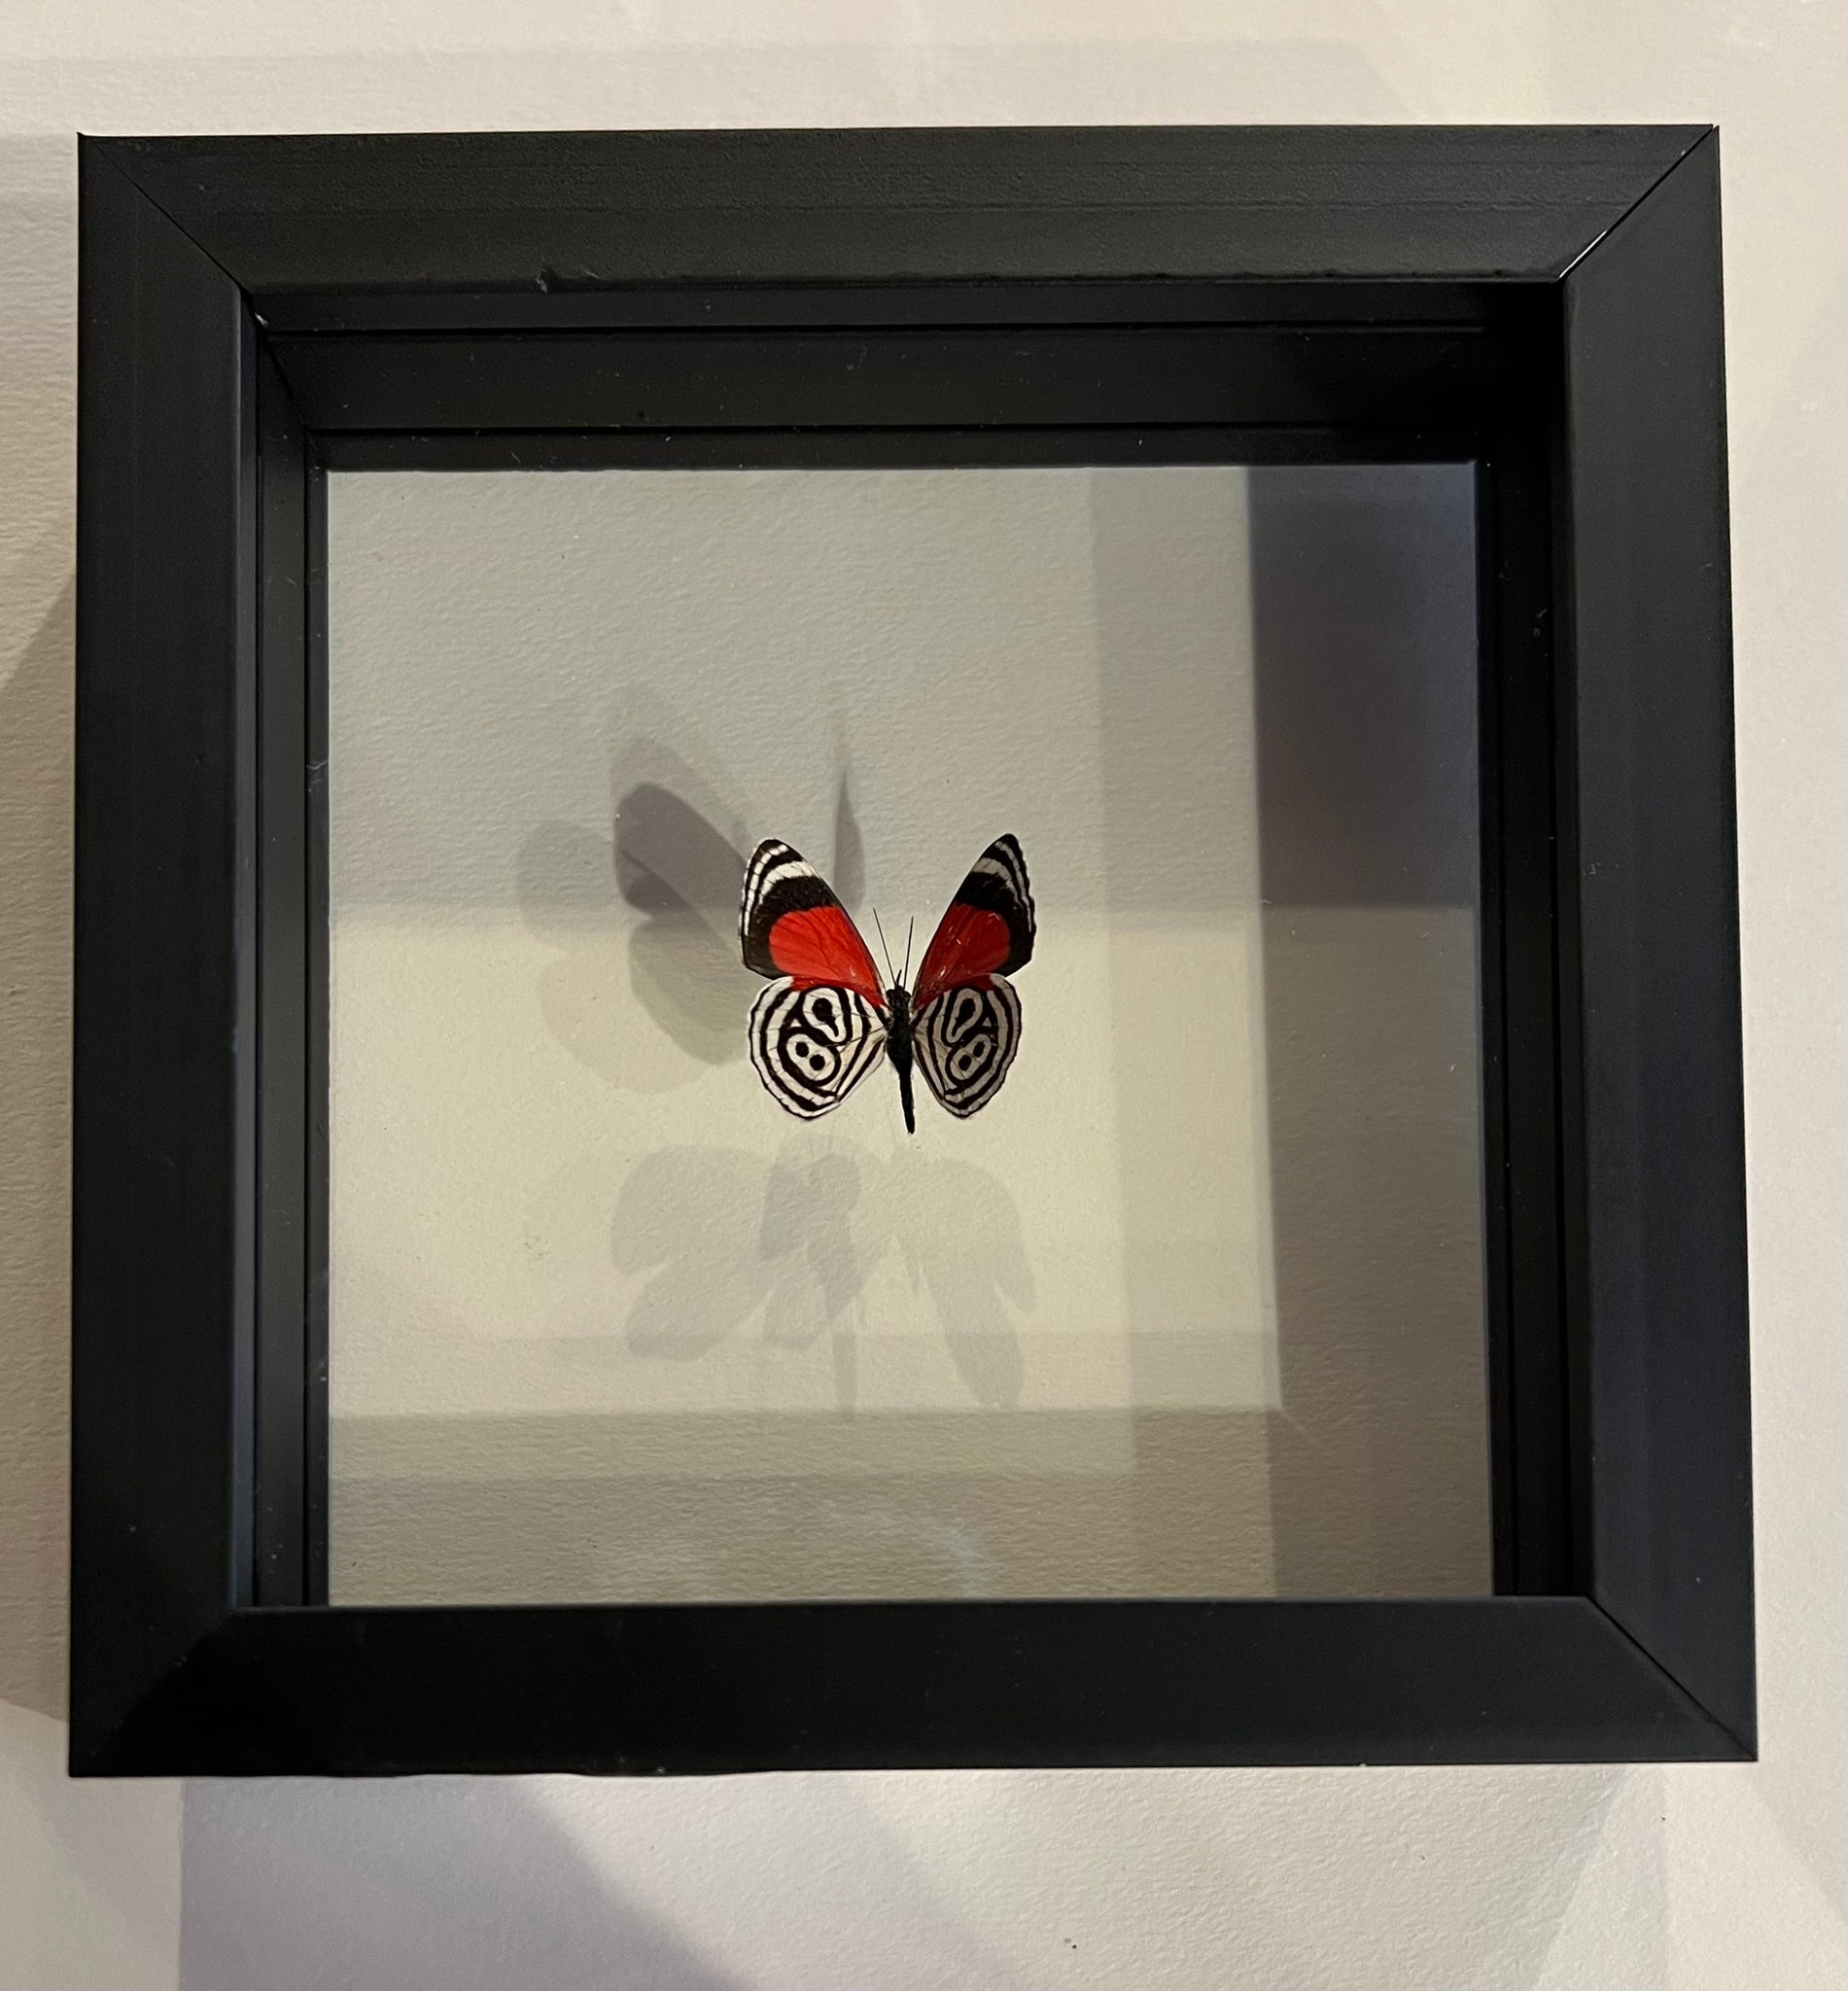 Cramer's 88 Butterfly Wall Art